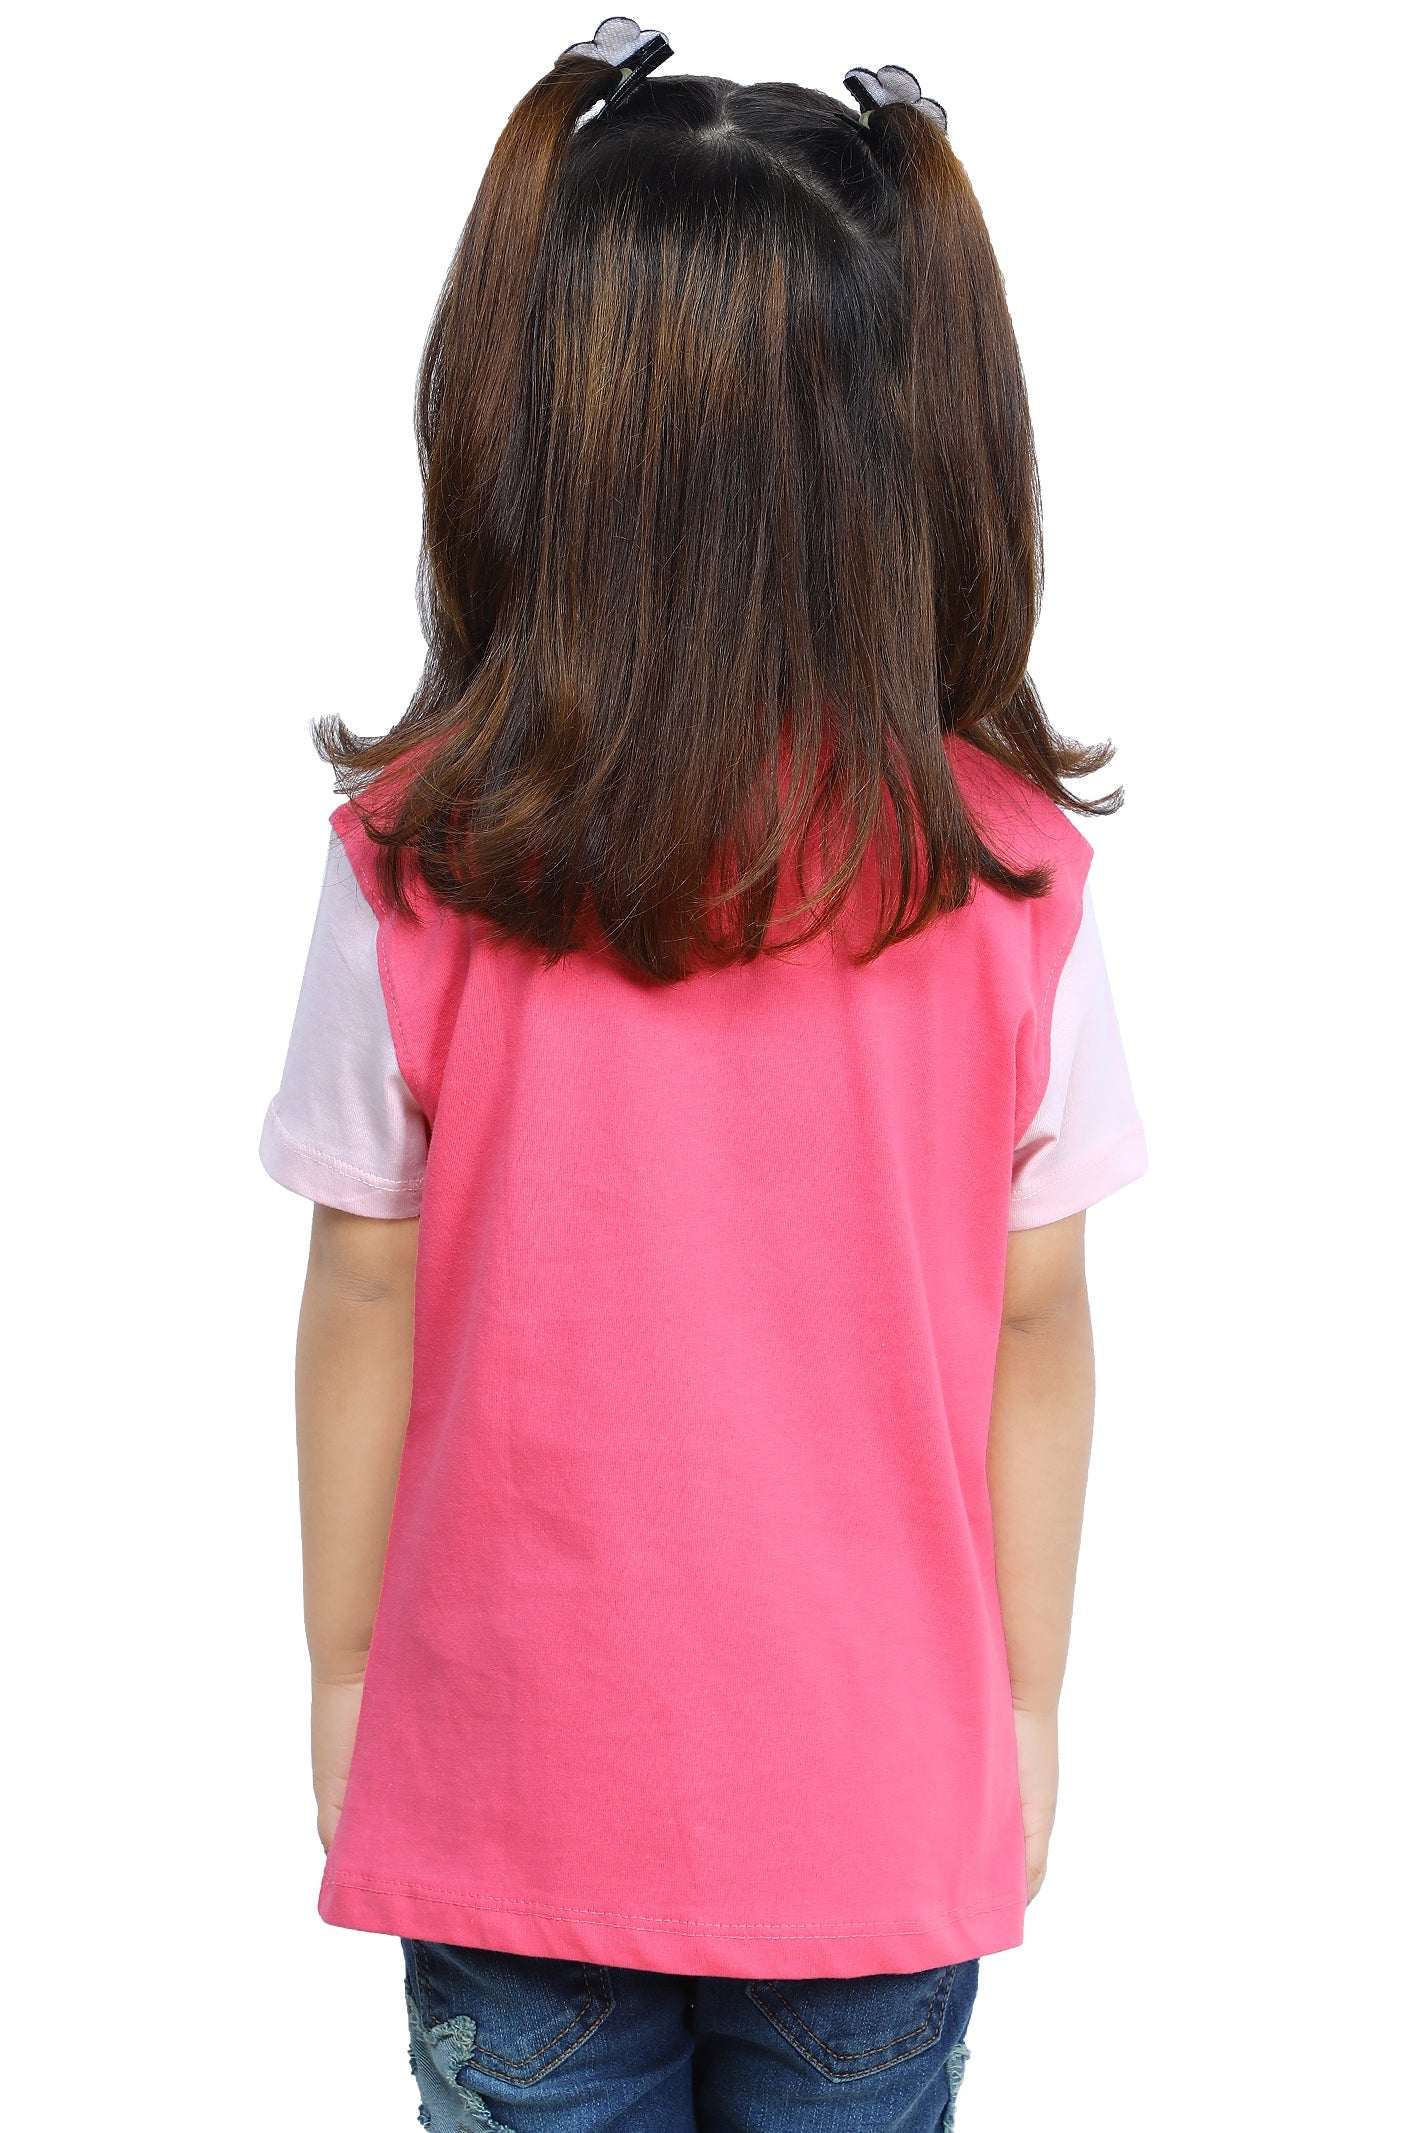 Girls T-Shirt In Fuchsia SKU: KGA-0253-FUCHSIA - Diners